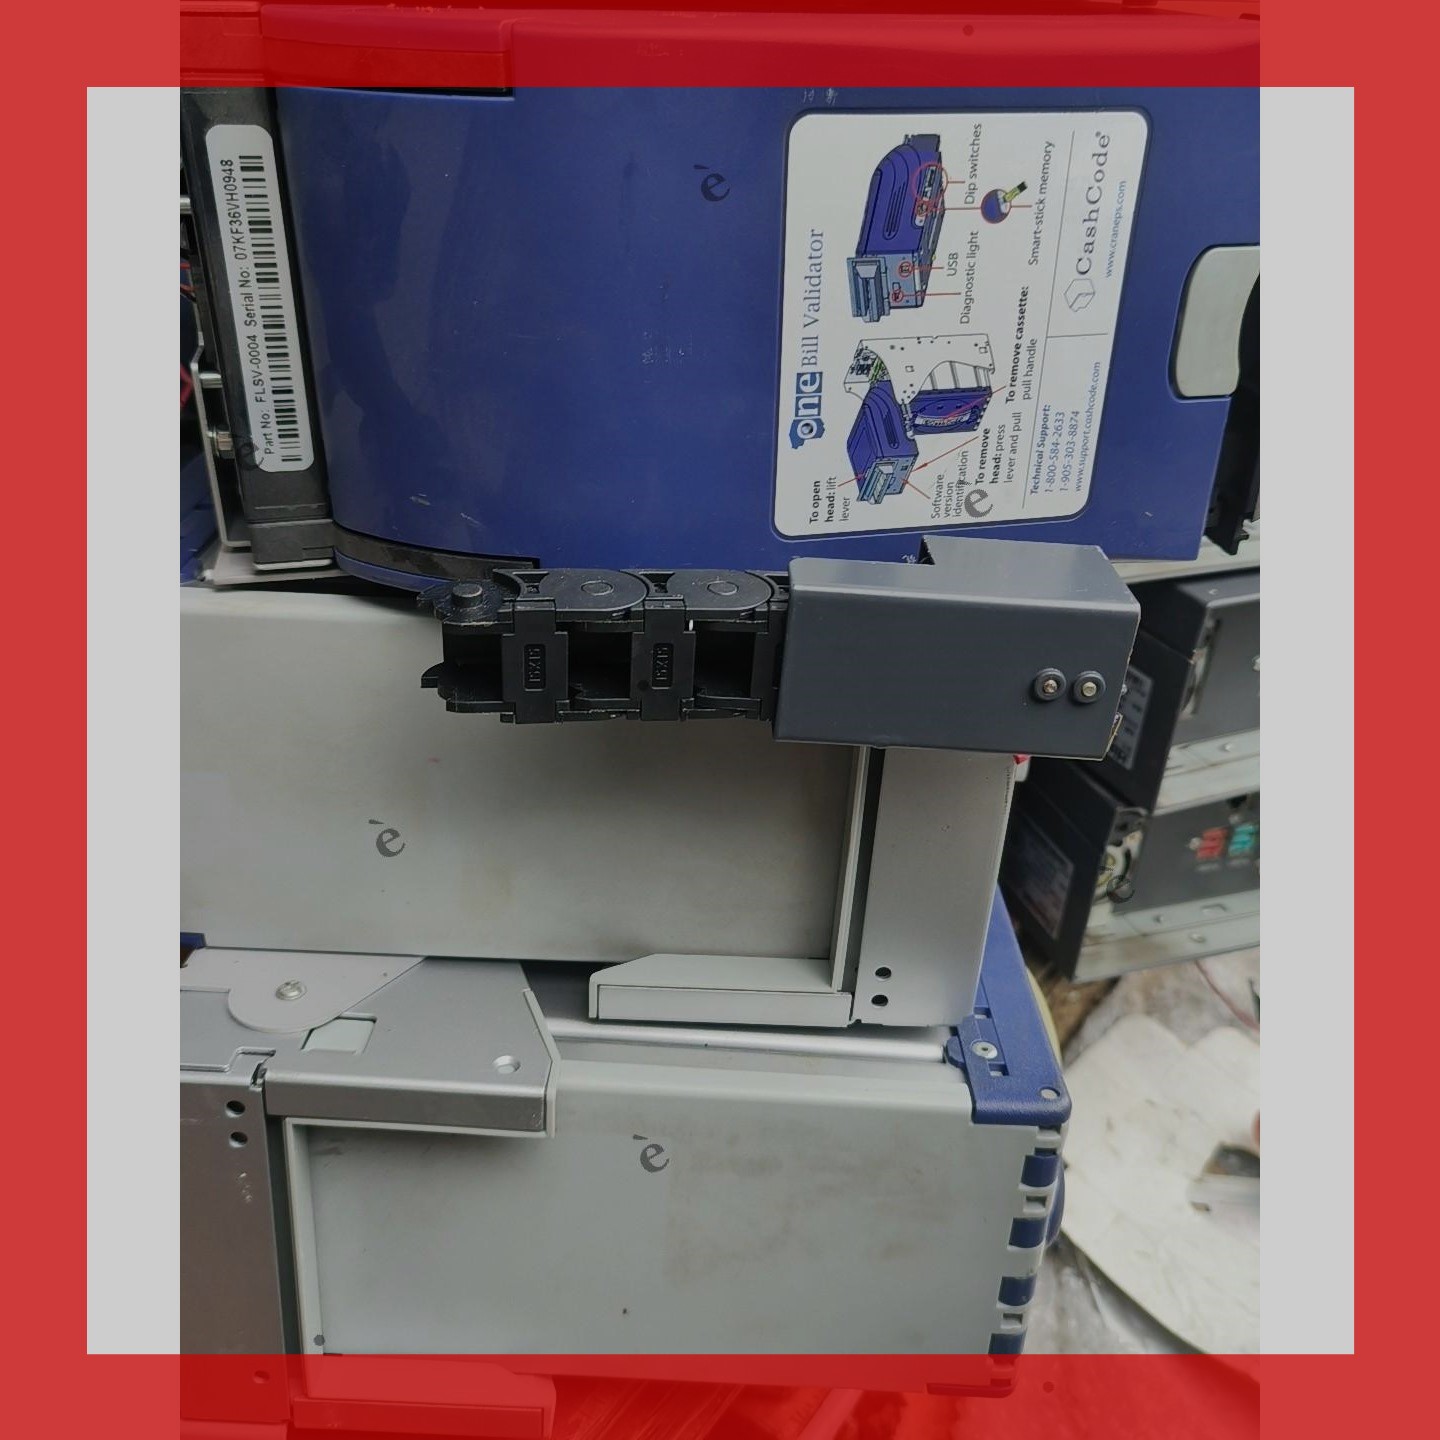 海信自助拆机纸币识别器，产地加拿大，型号FLSV-0004 维修议价